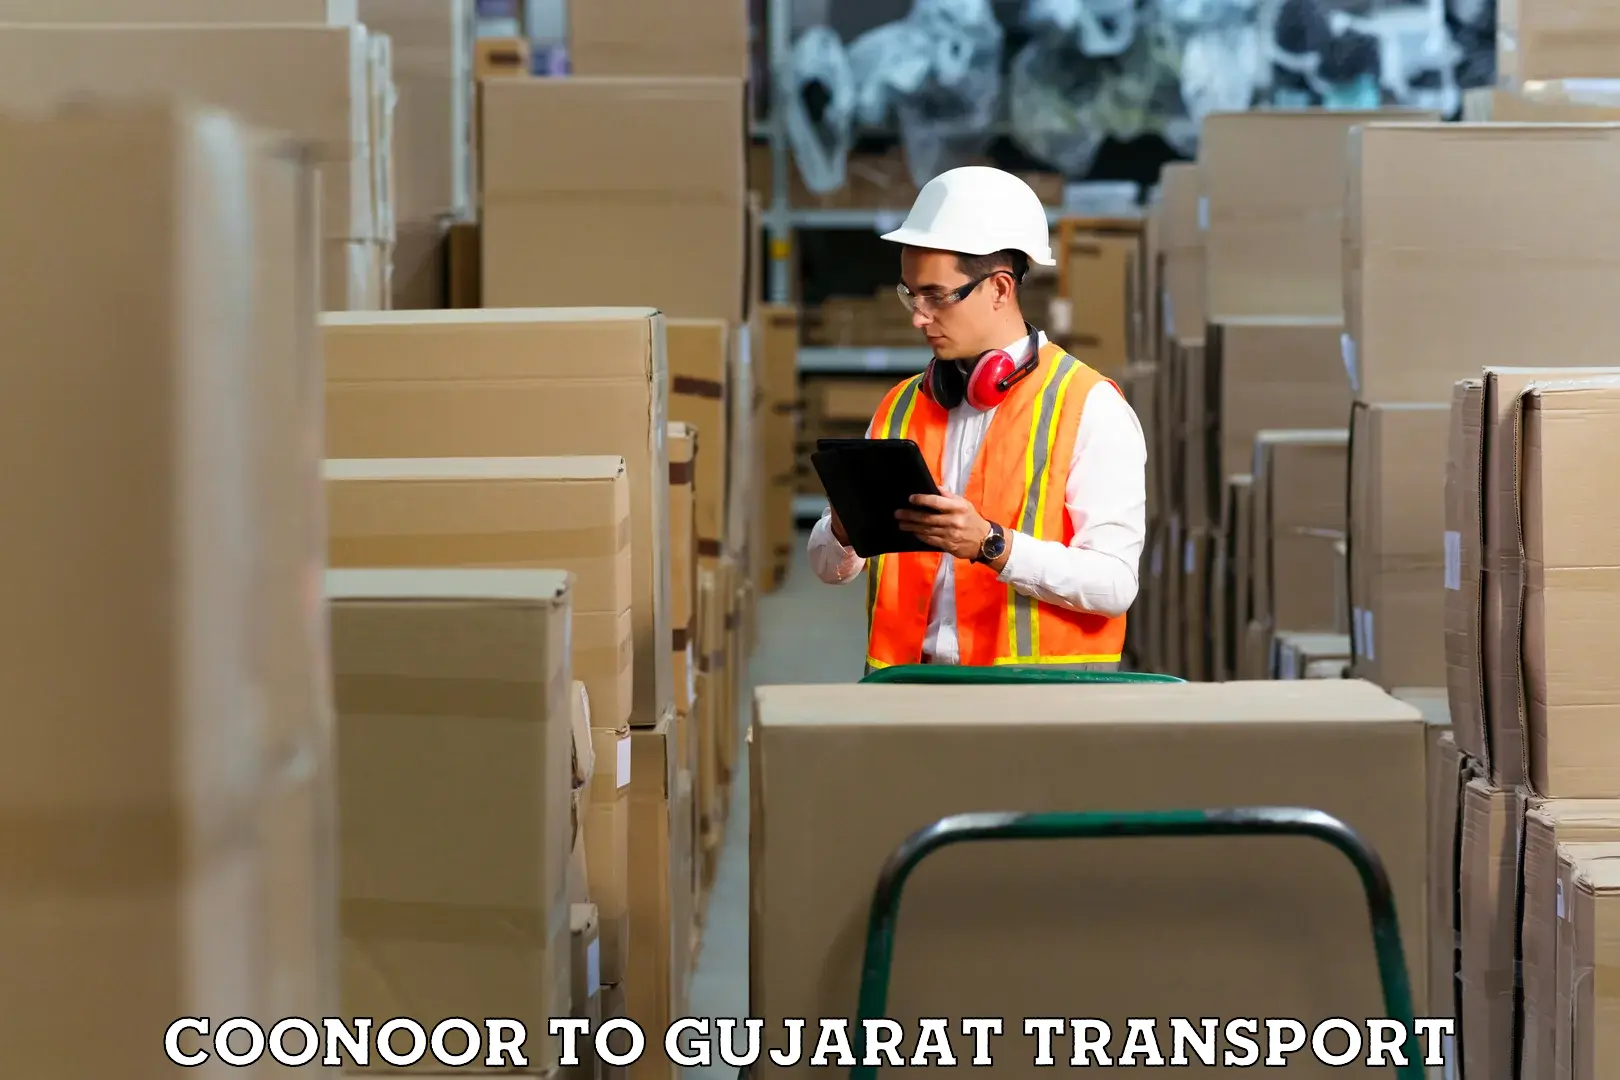 Online transport service Coonoor to Patan Gujarat